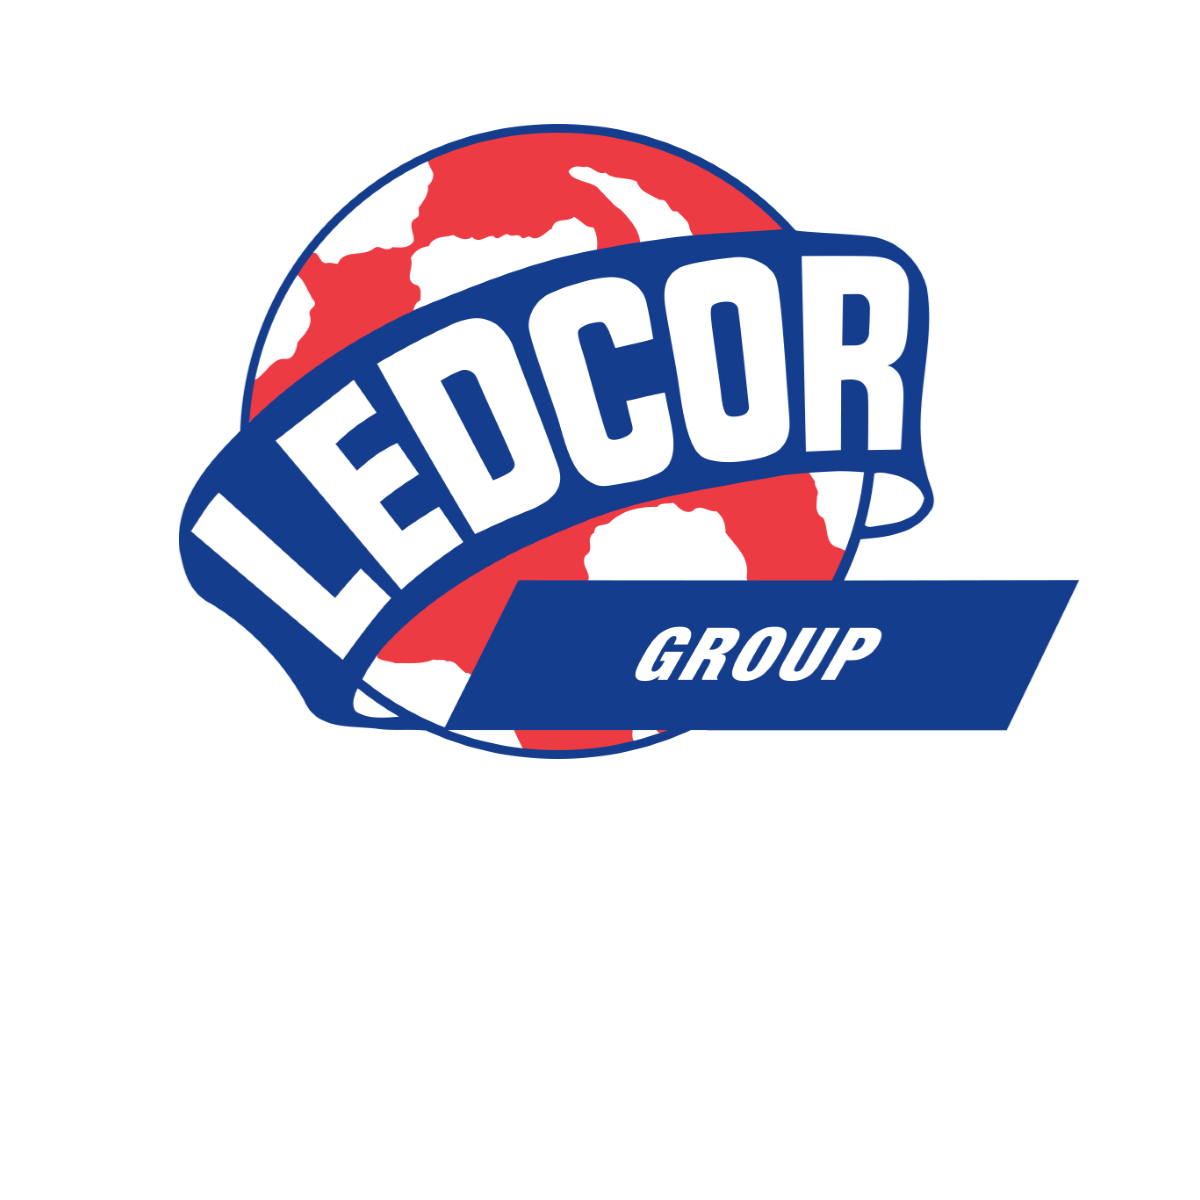 Ledcorp Group